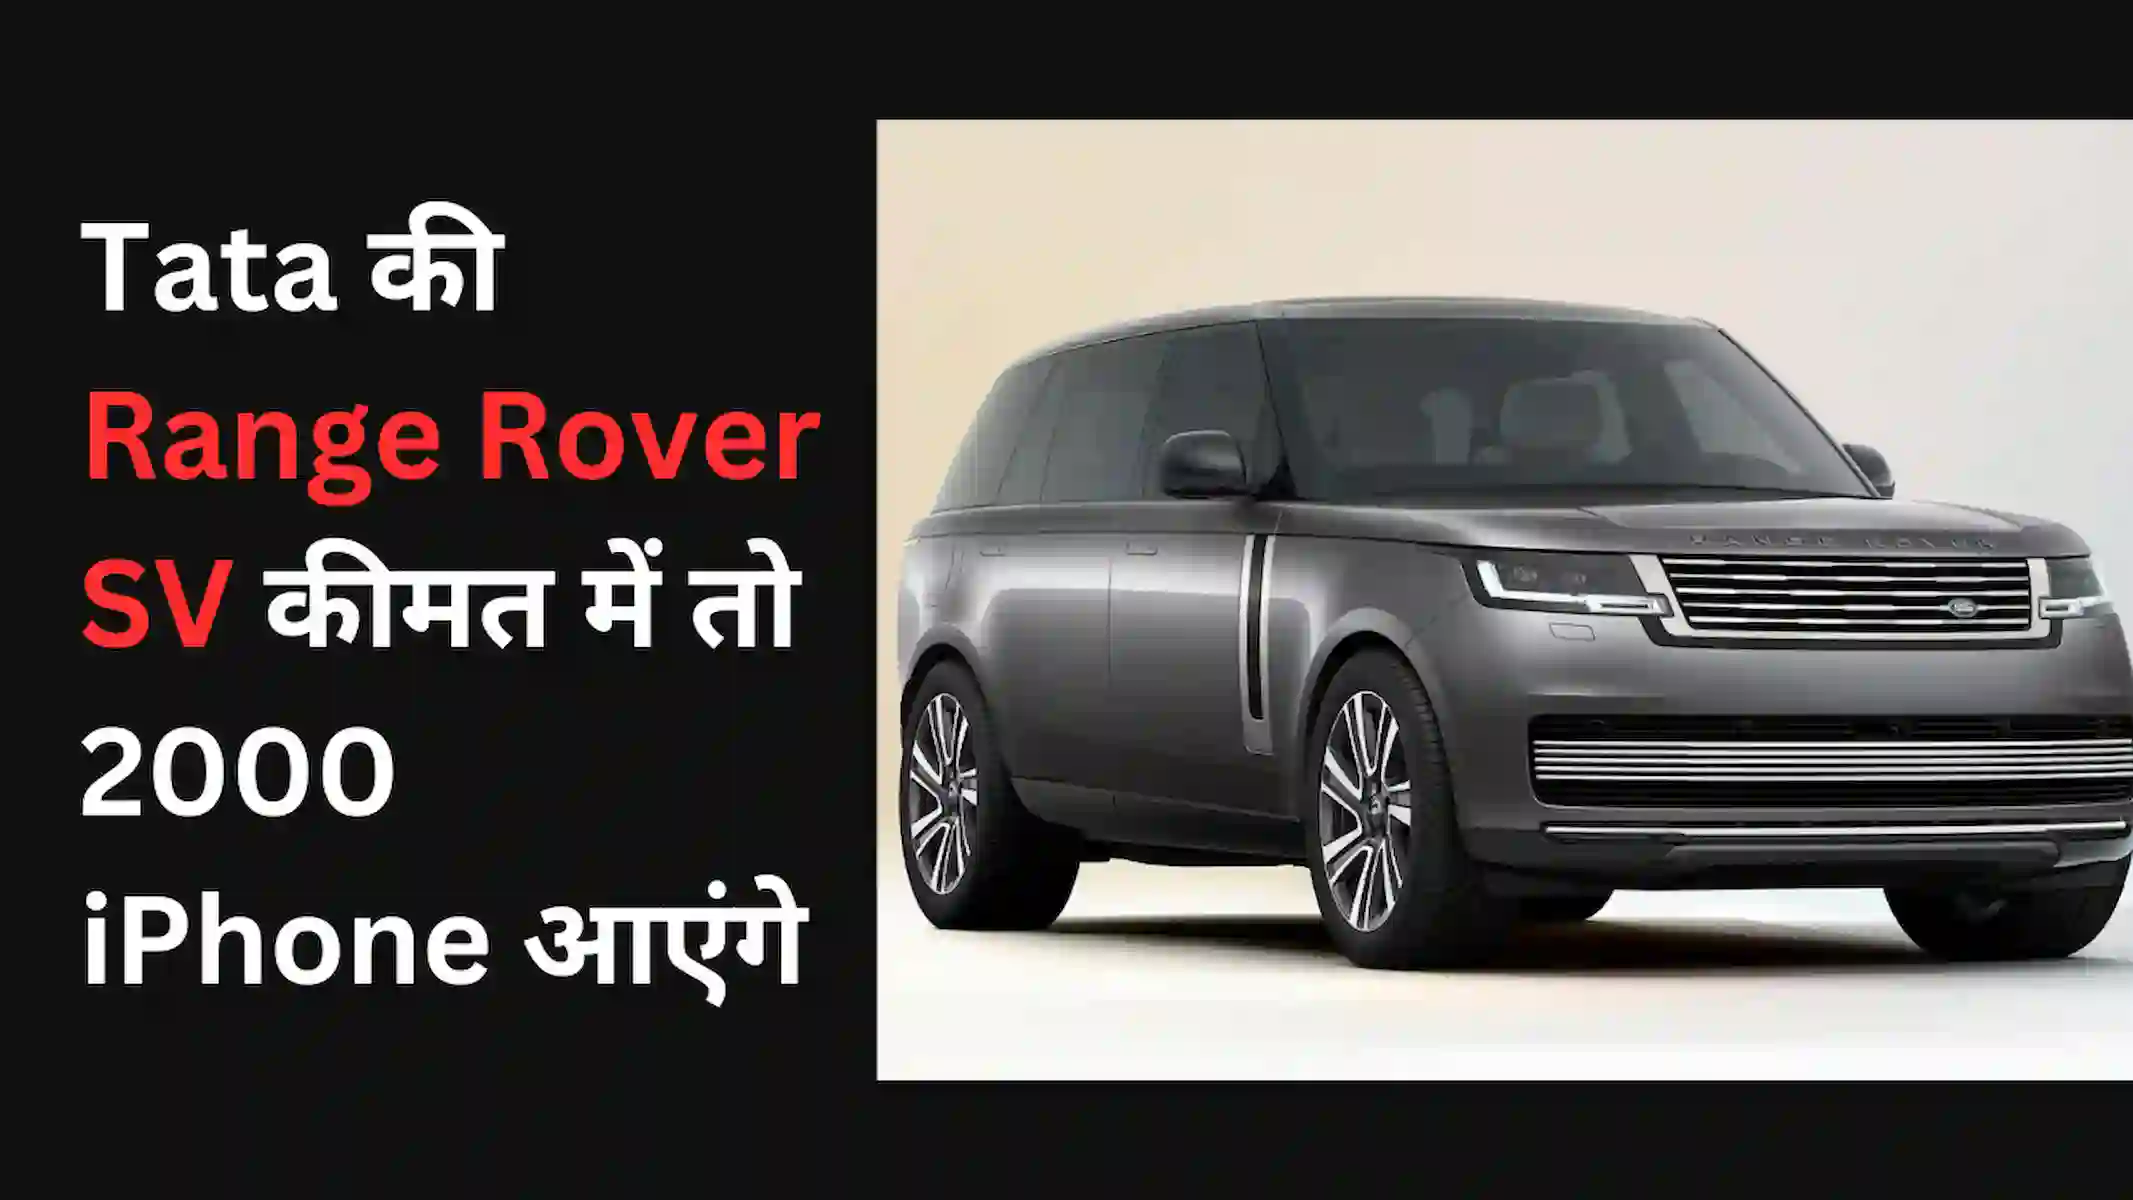 Range Rover SV Price